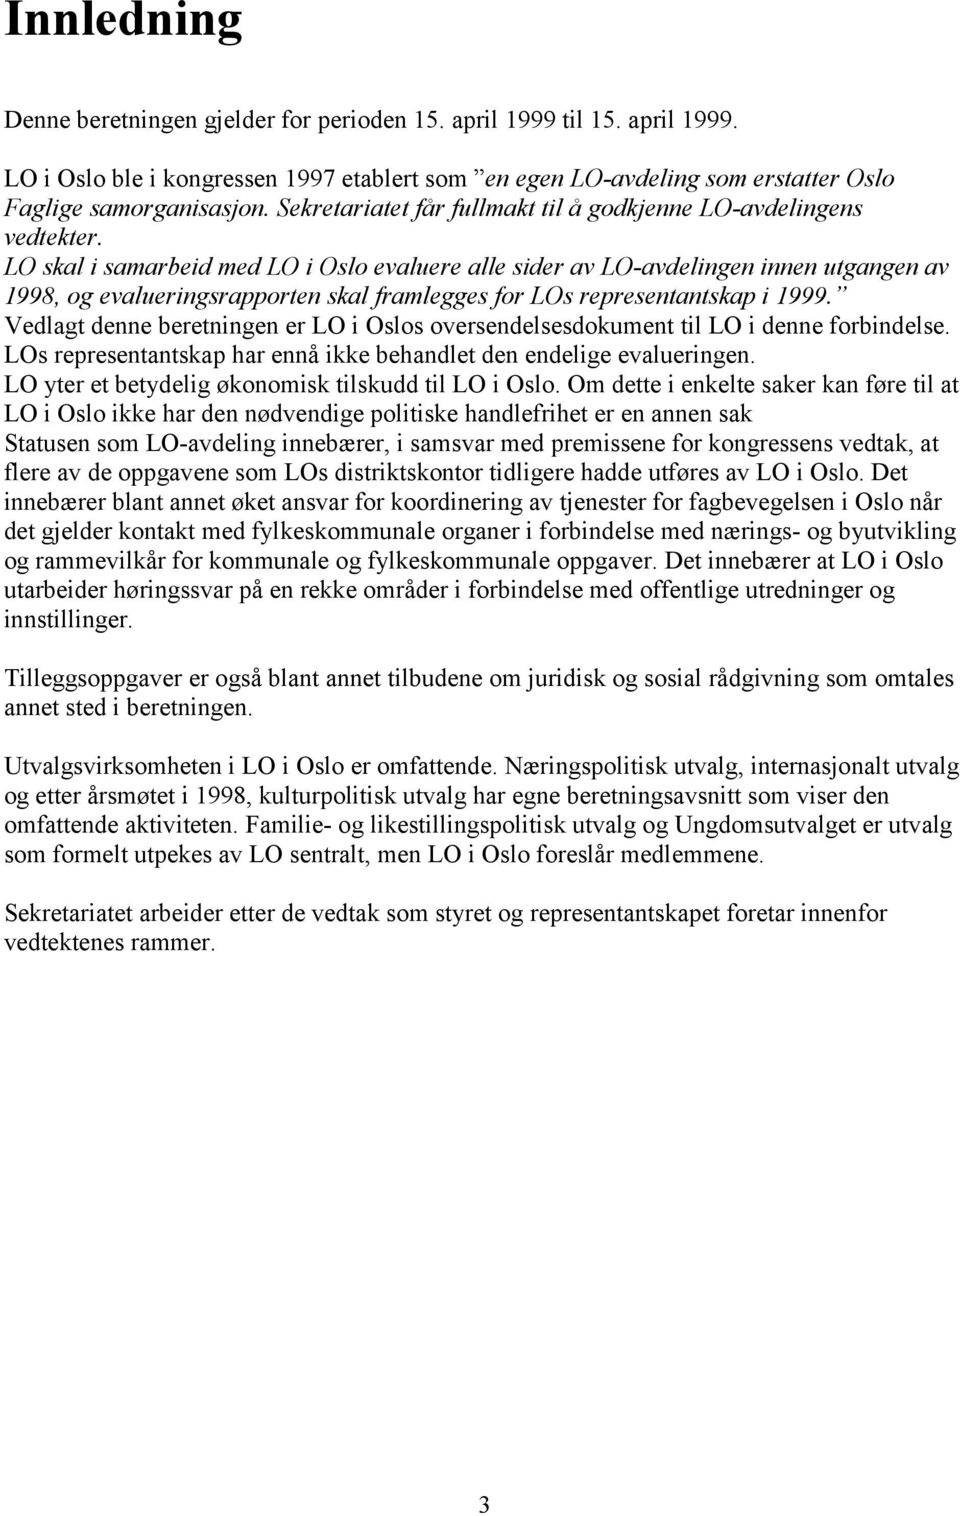 LO skal i samarbeid med LO i Oslo evaluere alle sider av LO-avdelingen innen utgangen av 1998, og evalueringsrapporten skal framlegges for LOs representantskap i 1999.